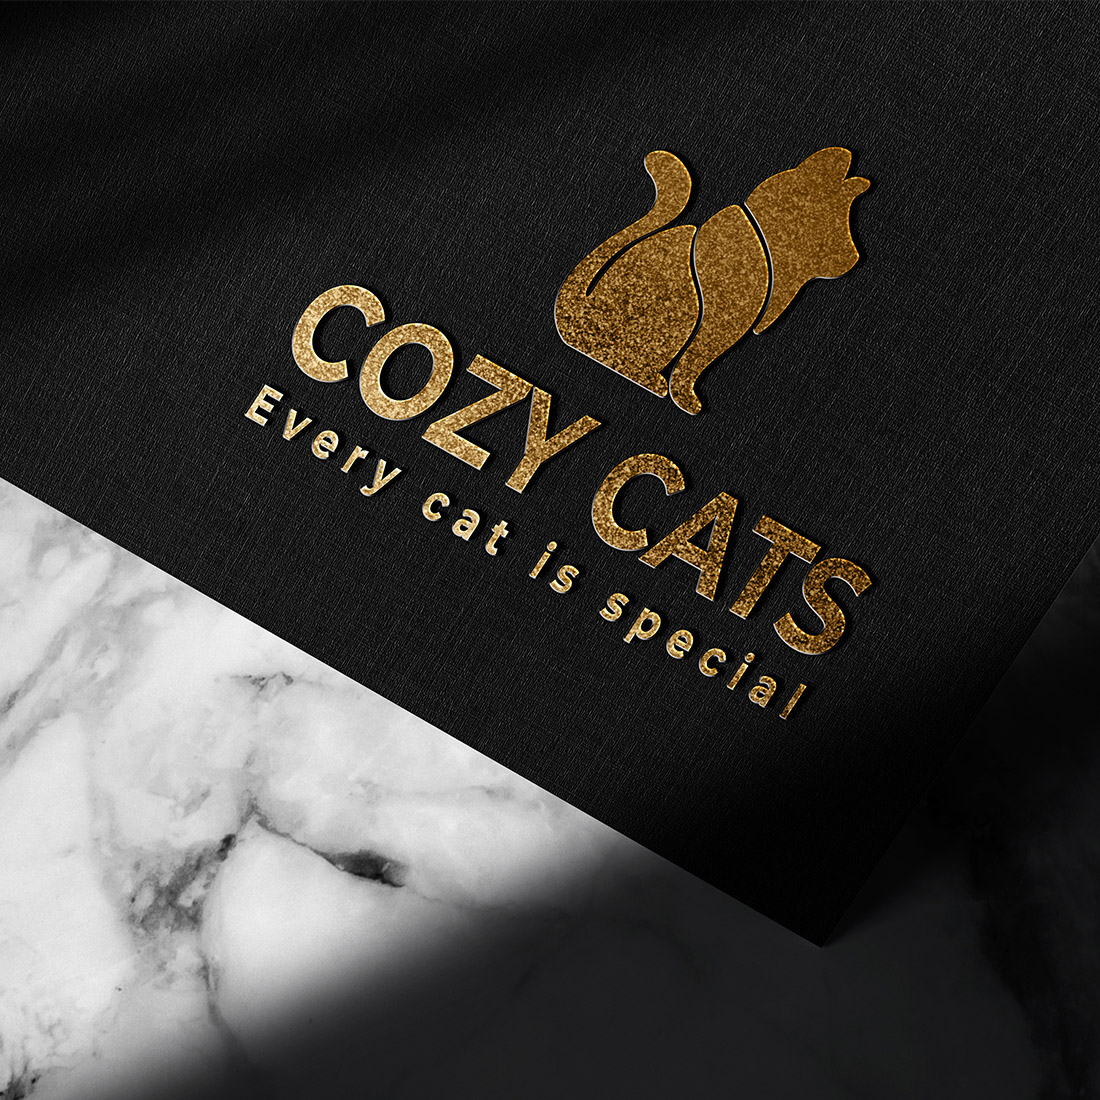 Cozy Cat L preview image.